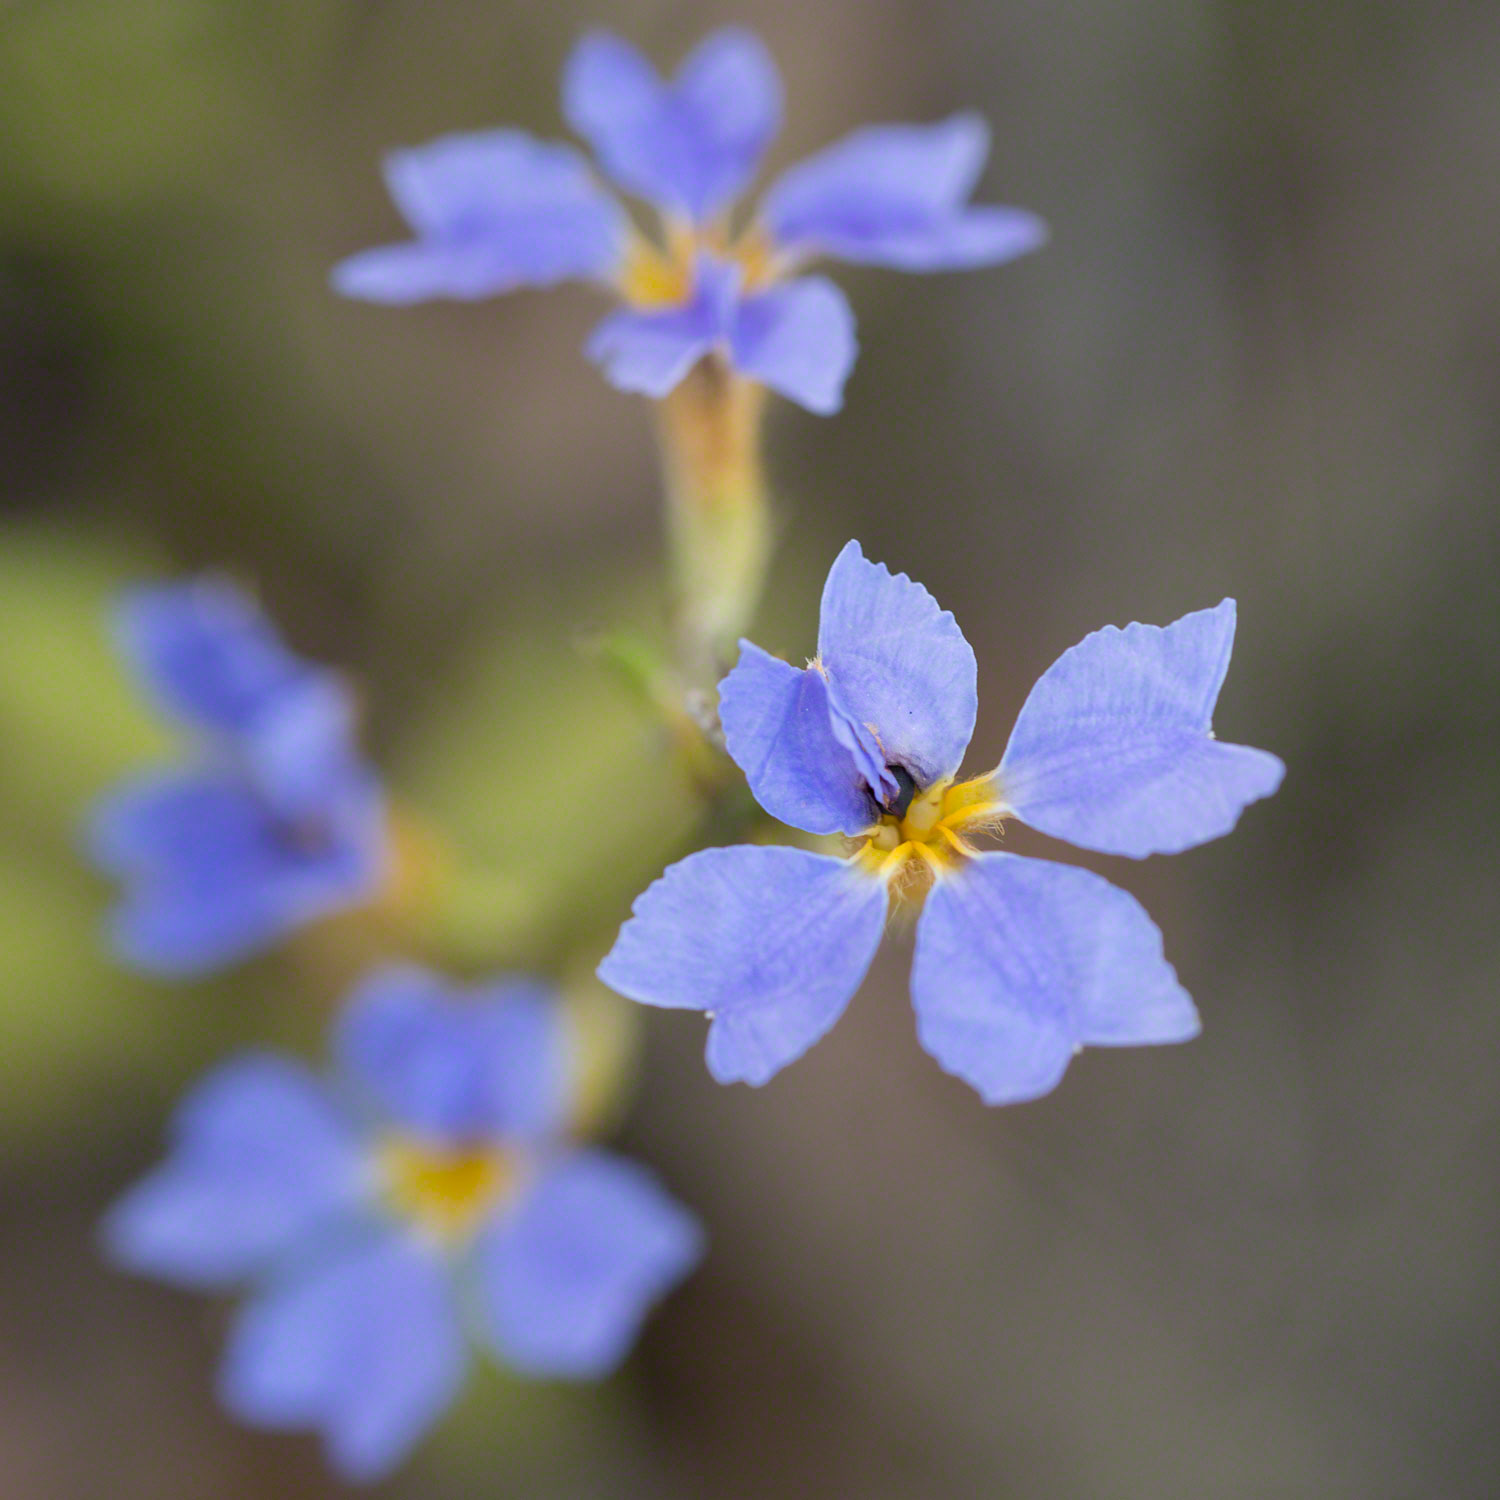 Warren-Hinder-blue-Flower-detail.jpg